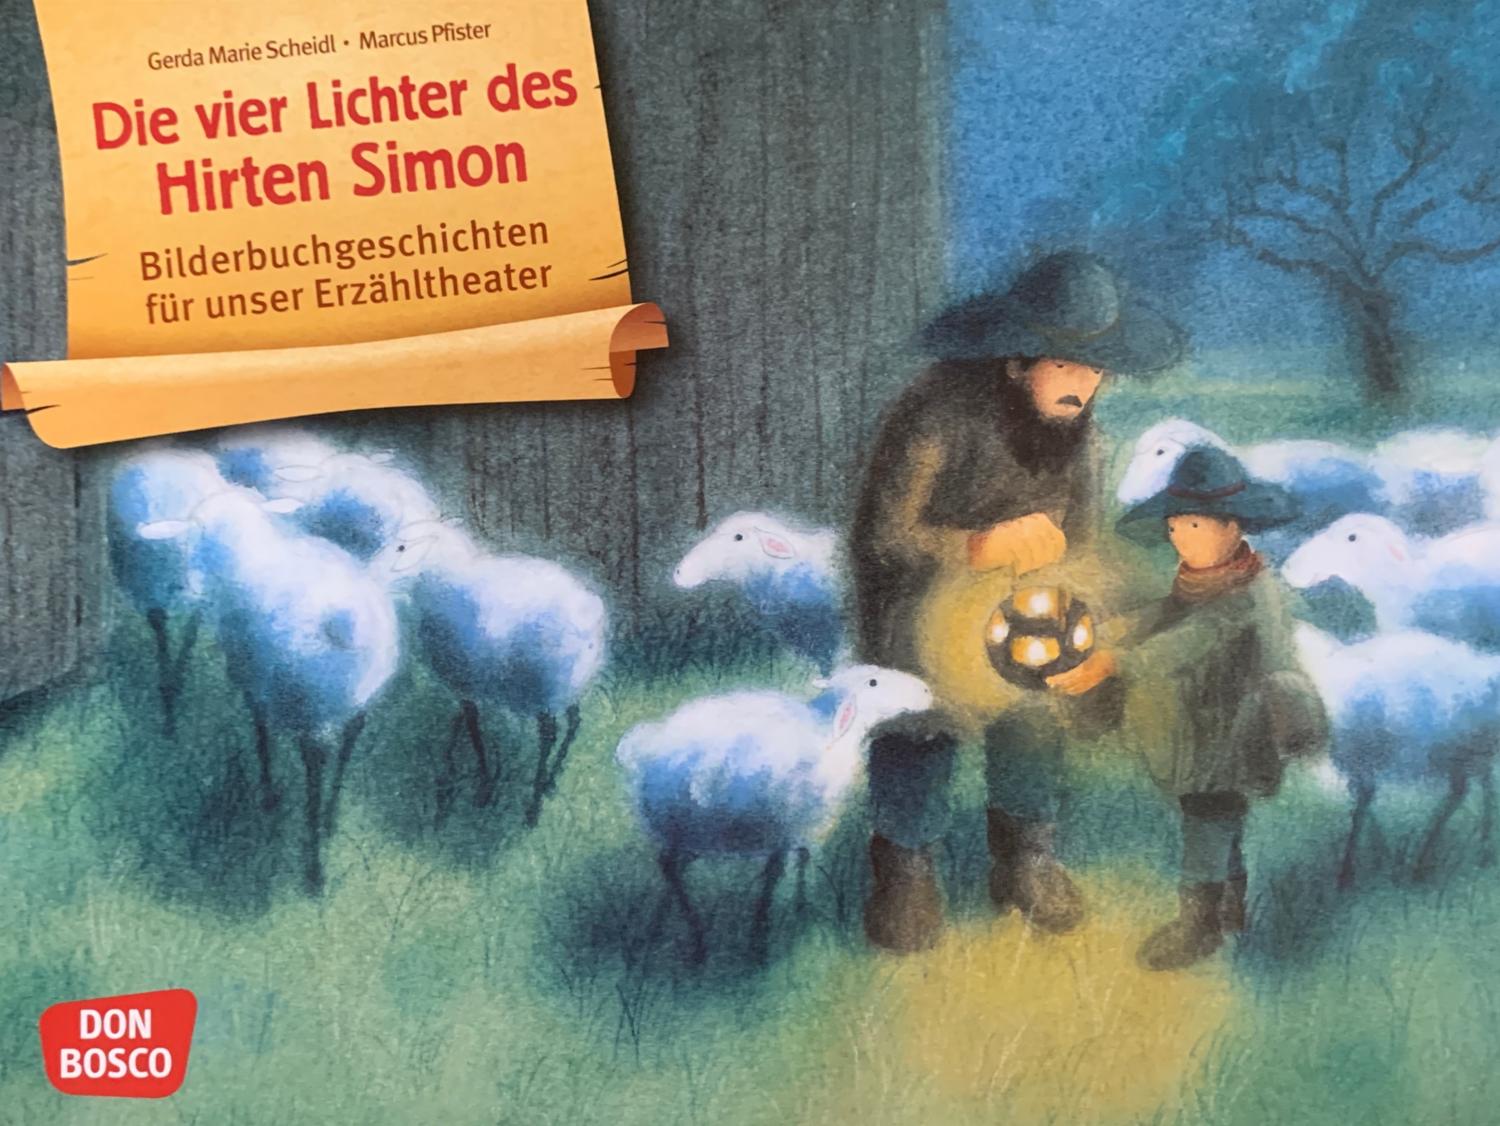 Die vier Lichter des Hirten Simon (c) Don Bosco Verlag / Marcus Pfister